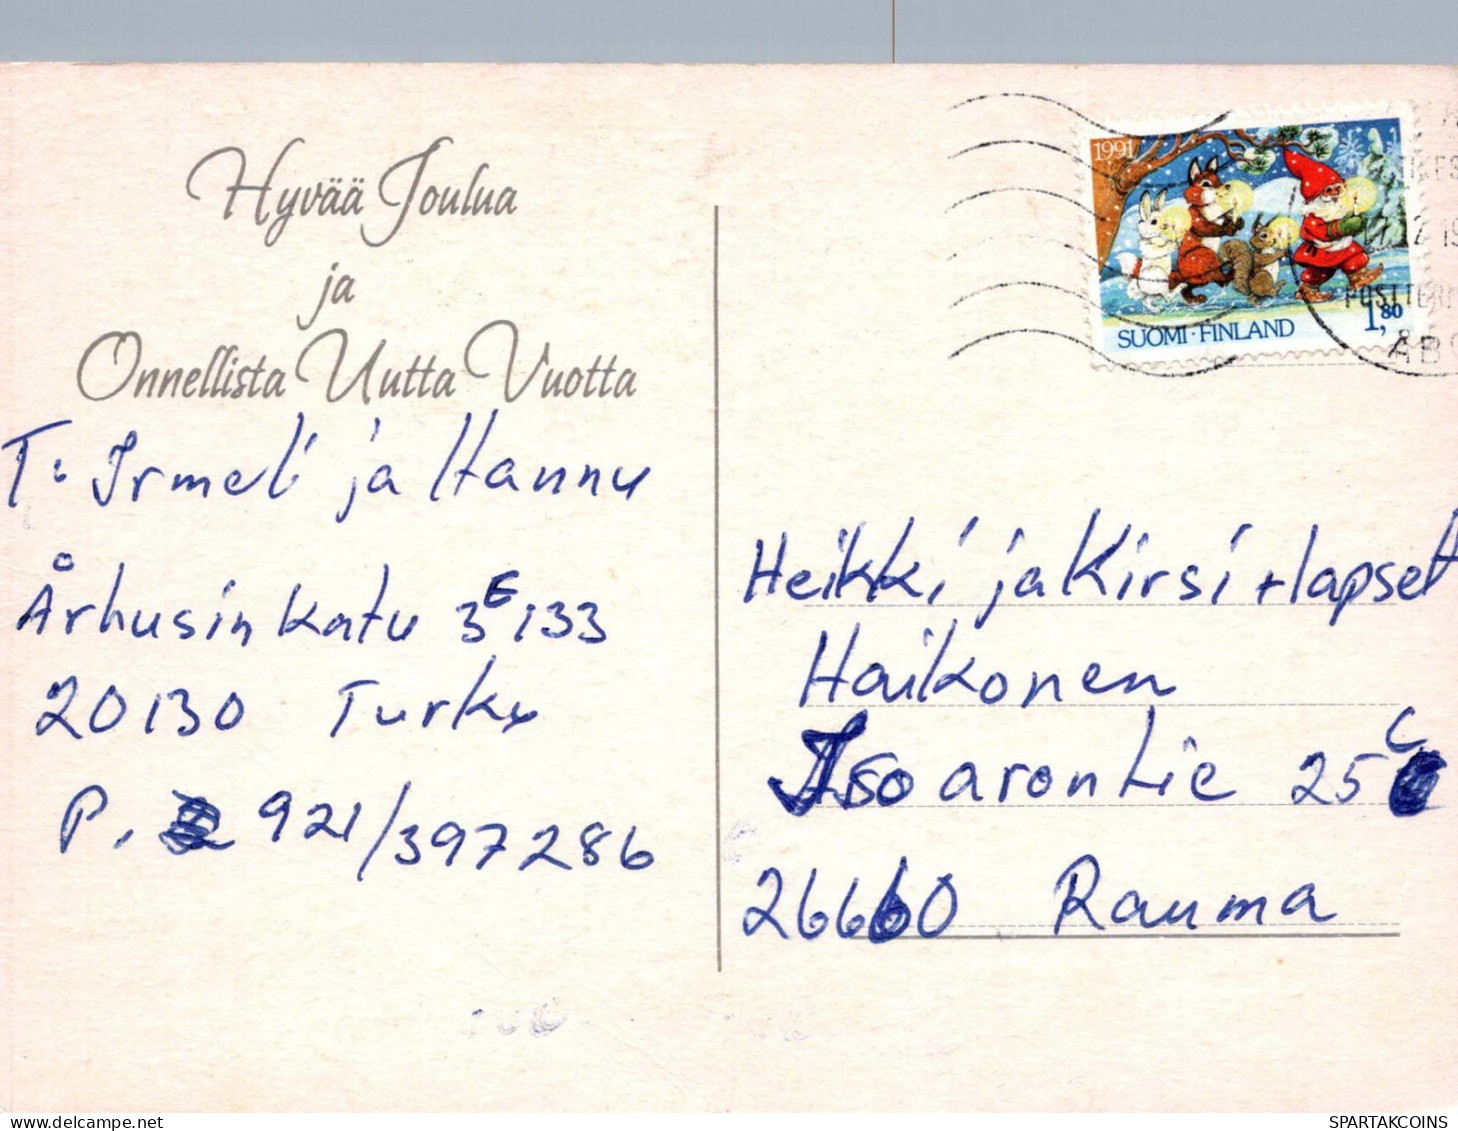 PÈRE NOËL Bonne Année Noël Vintage Carte Postale CPSM #PBL308.FR - Santa Claus